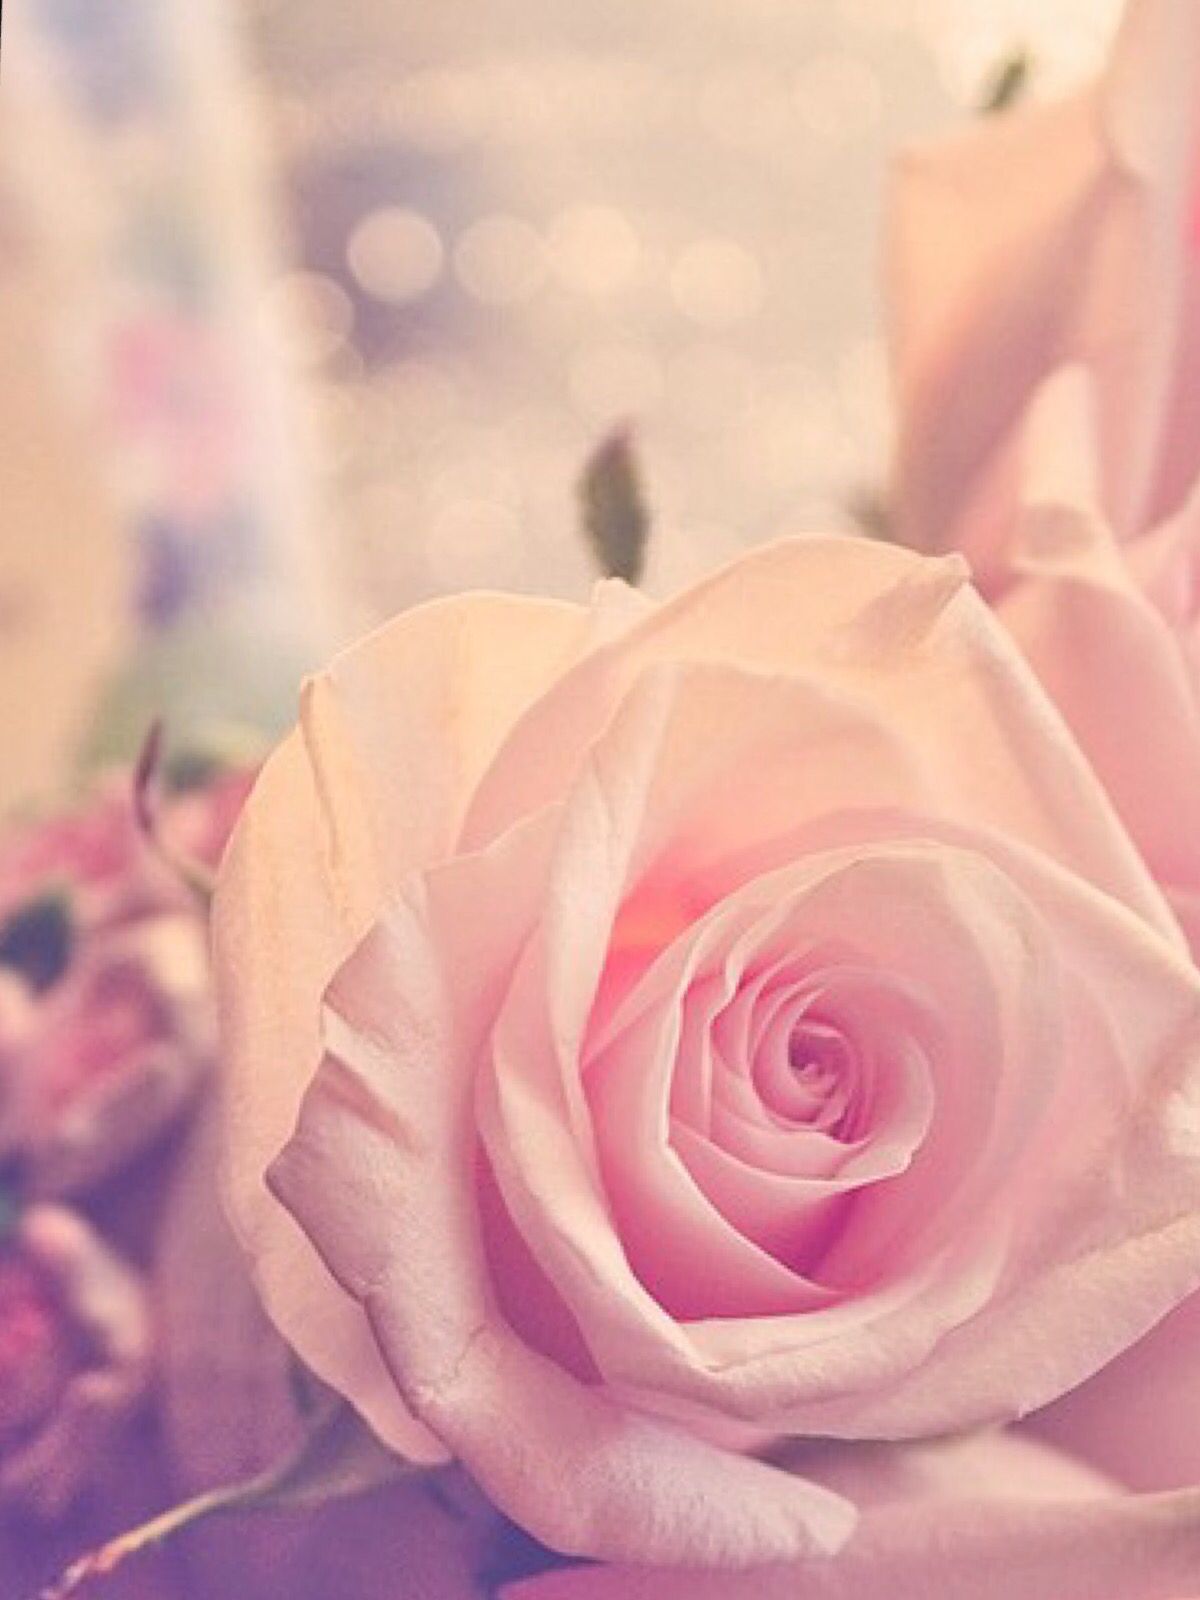 Cute rose Wallpaper #wallpaper #marieghansen. Rose wallpaper, Rose, Cute rose